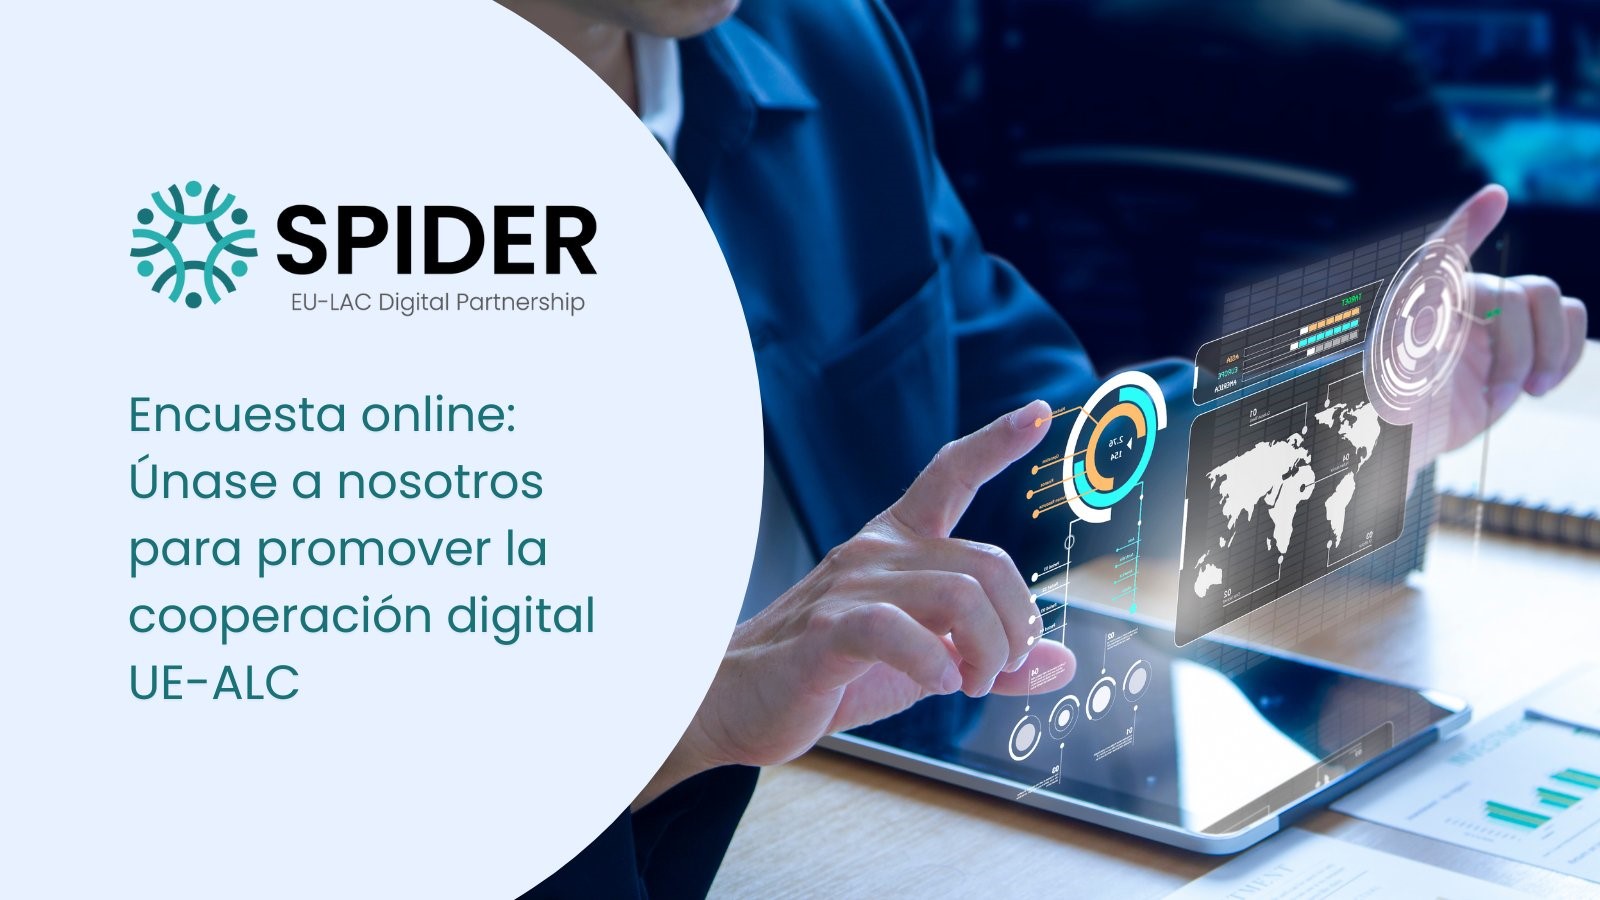 Projeto SPIDER lança pesquisa sobre a interconectividade do ecossistema digital na América Latina, no Caribe e na UE